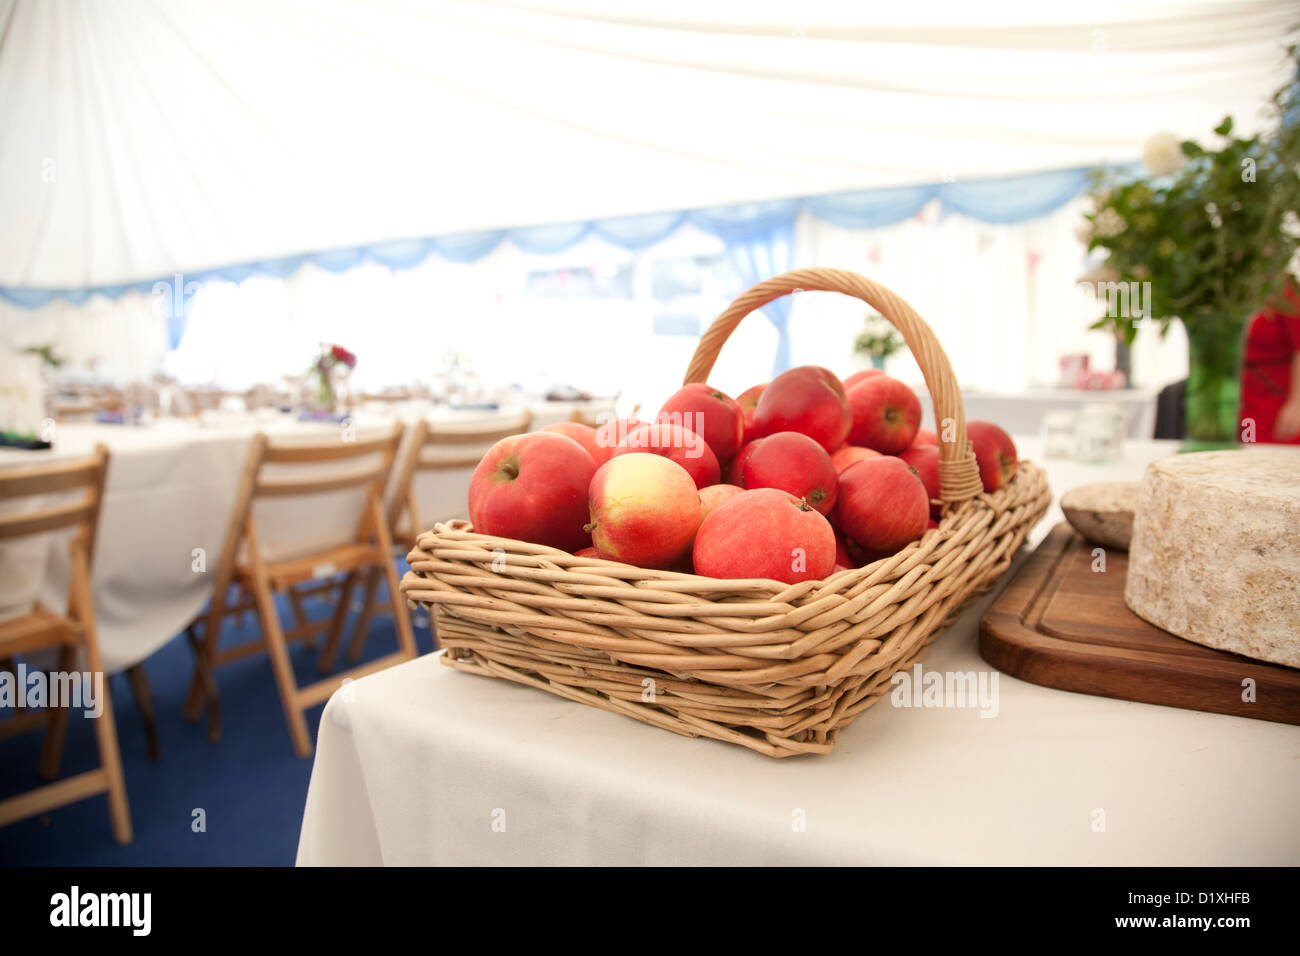 https://c8.alamy.com/compfr/d1xhfb/panier-de-pommes-rouges-sur-une-table-a-cote-des-fromages-des-tables-et-chaises-pour-une-reception-de-mariage-dans-un-rectangle-en-arriere-plan-d1xhfb.jpg